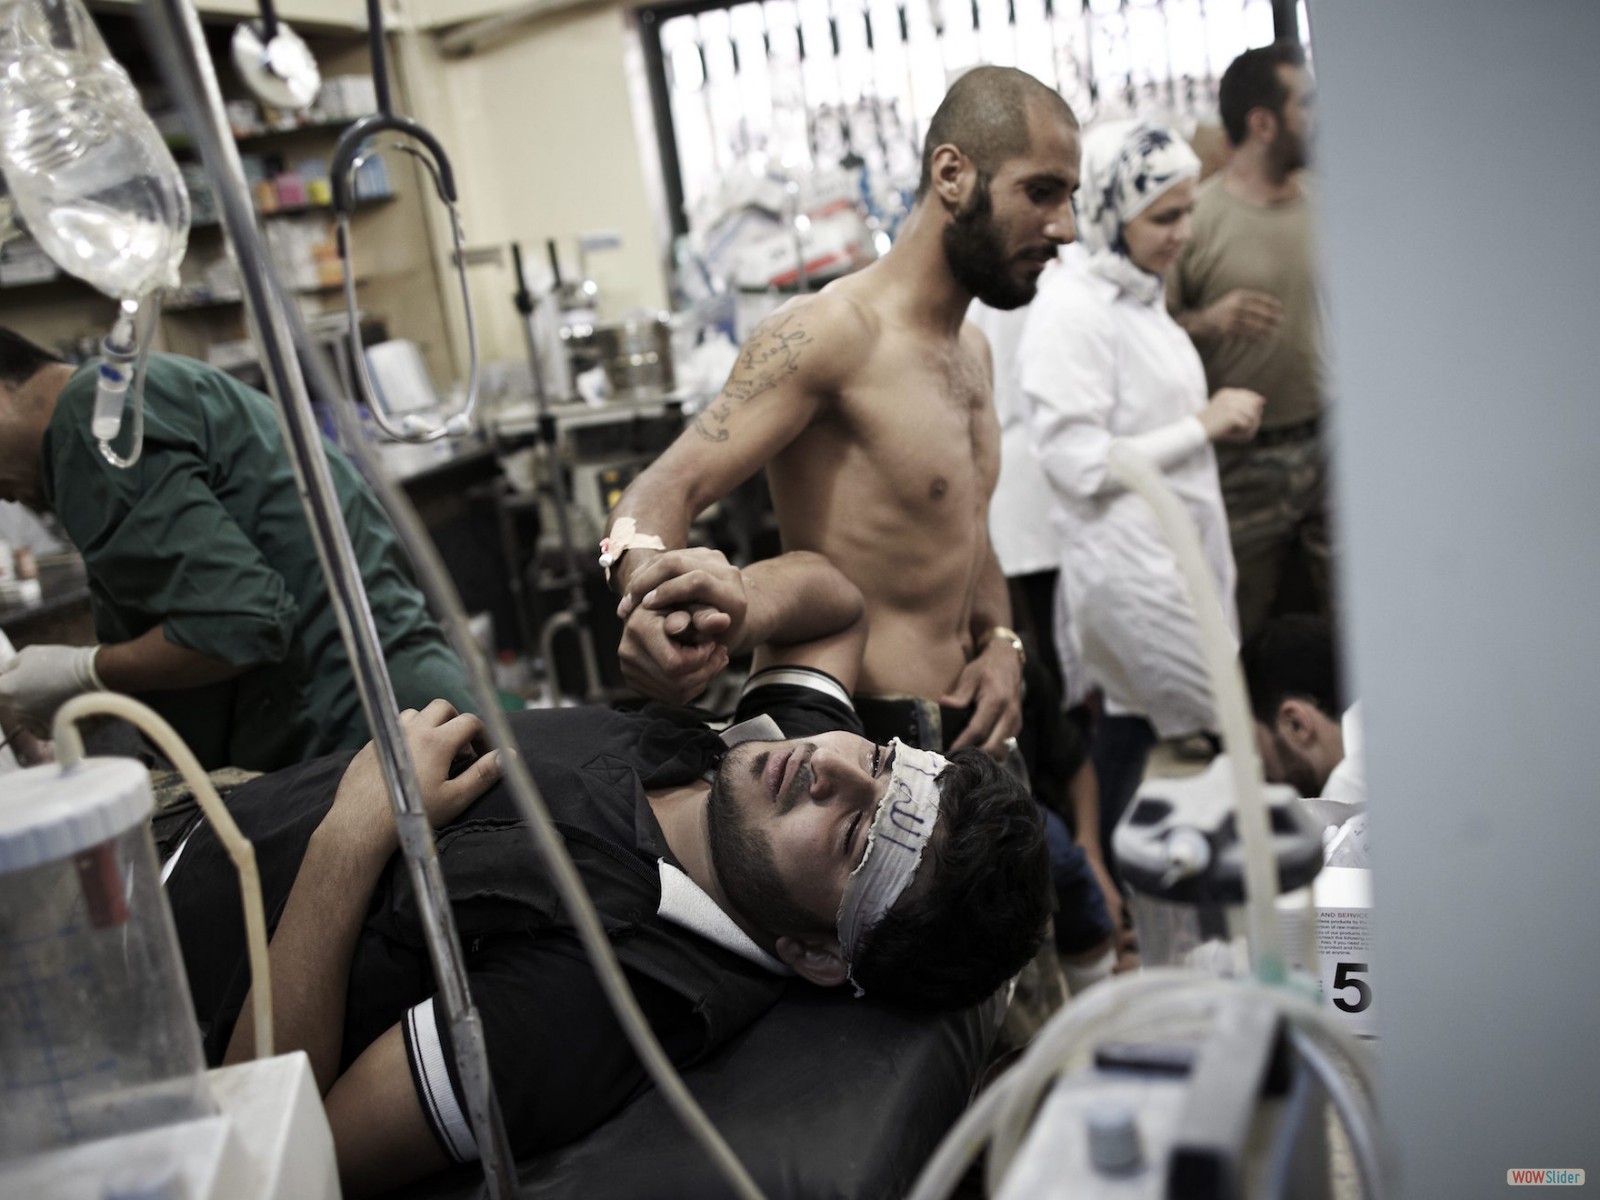 Un combattant de l’ASL tenant la main d’un camarade blessé, à l’hôpital Dar al-Shifa.
<br><i><b>

A Free Syrian Army fighter holding the hand of a wounded comrade at Dar al-Shifa hospital.
</b></i><br><i>© Sebastiano Tomada - Sipa Press - 2013</i>
